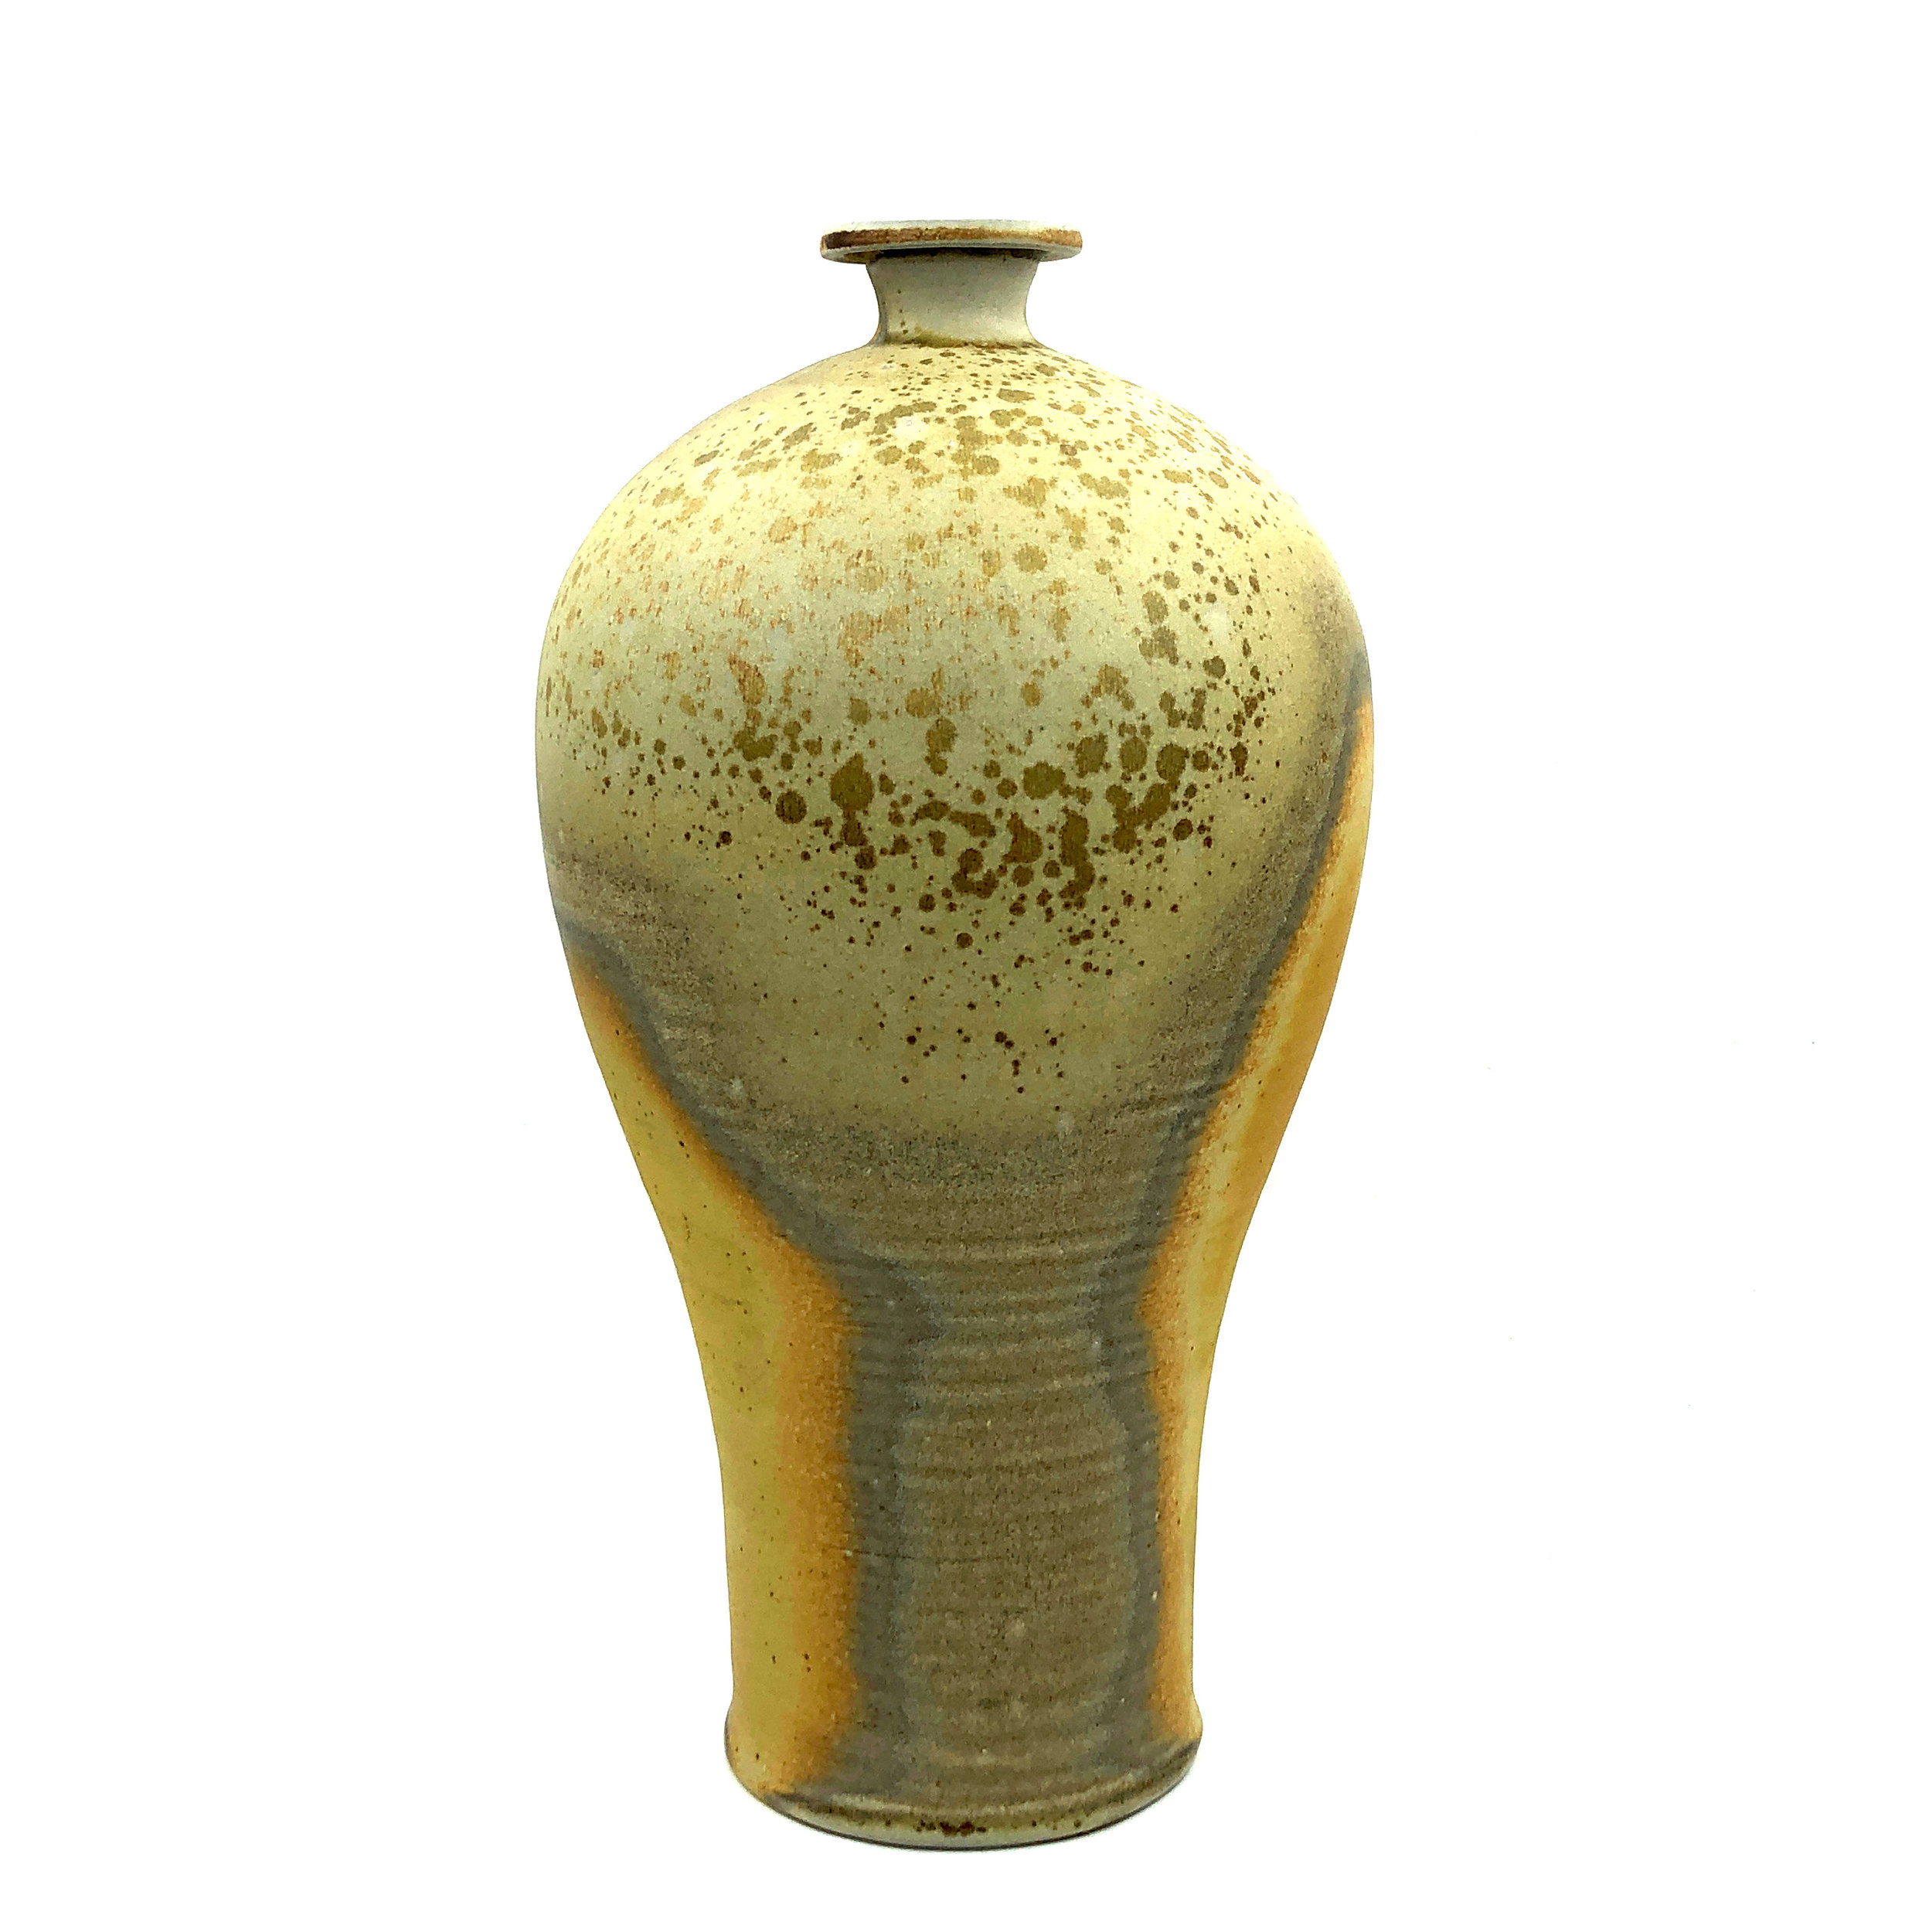   Vase,  soda fired stoneware, 2019 